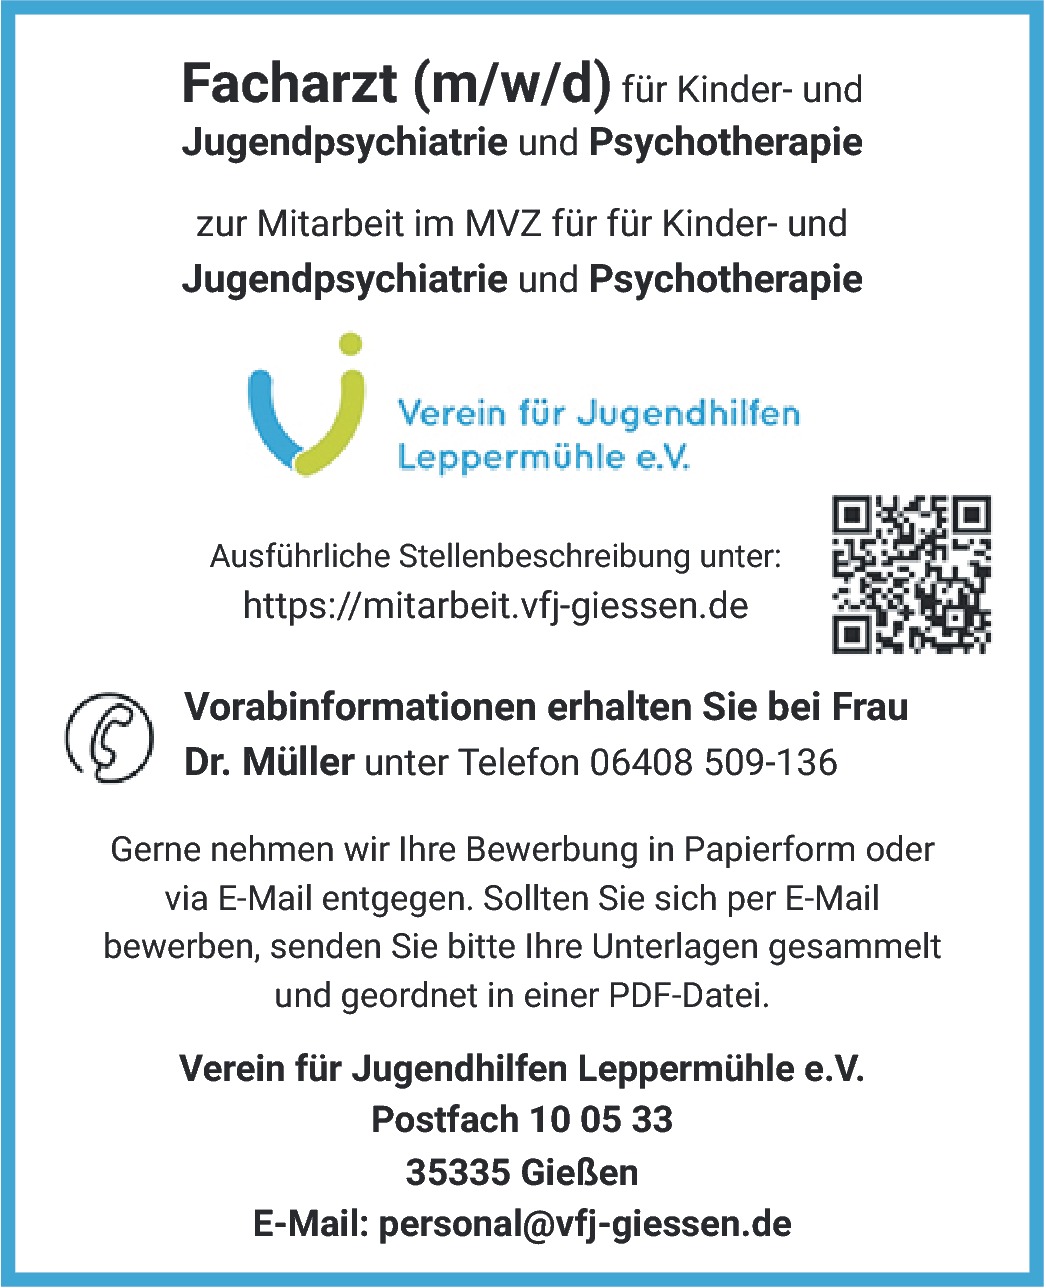 Facharzt für Kinder- und Jugendpsychiatrie und Psychotherapie m/w/d